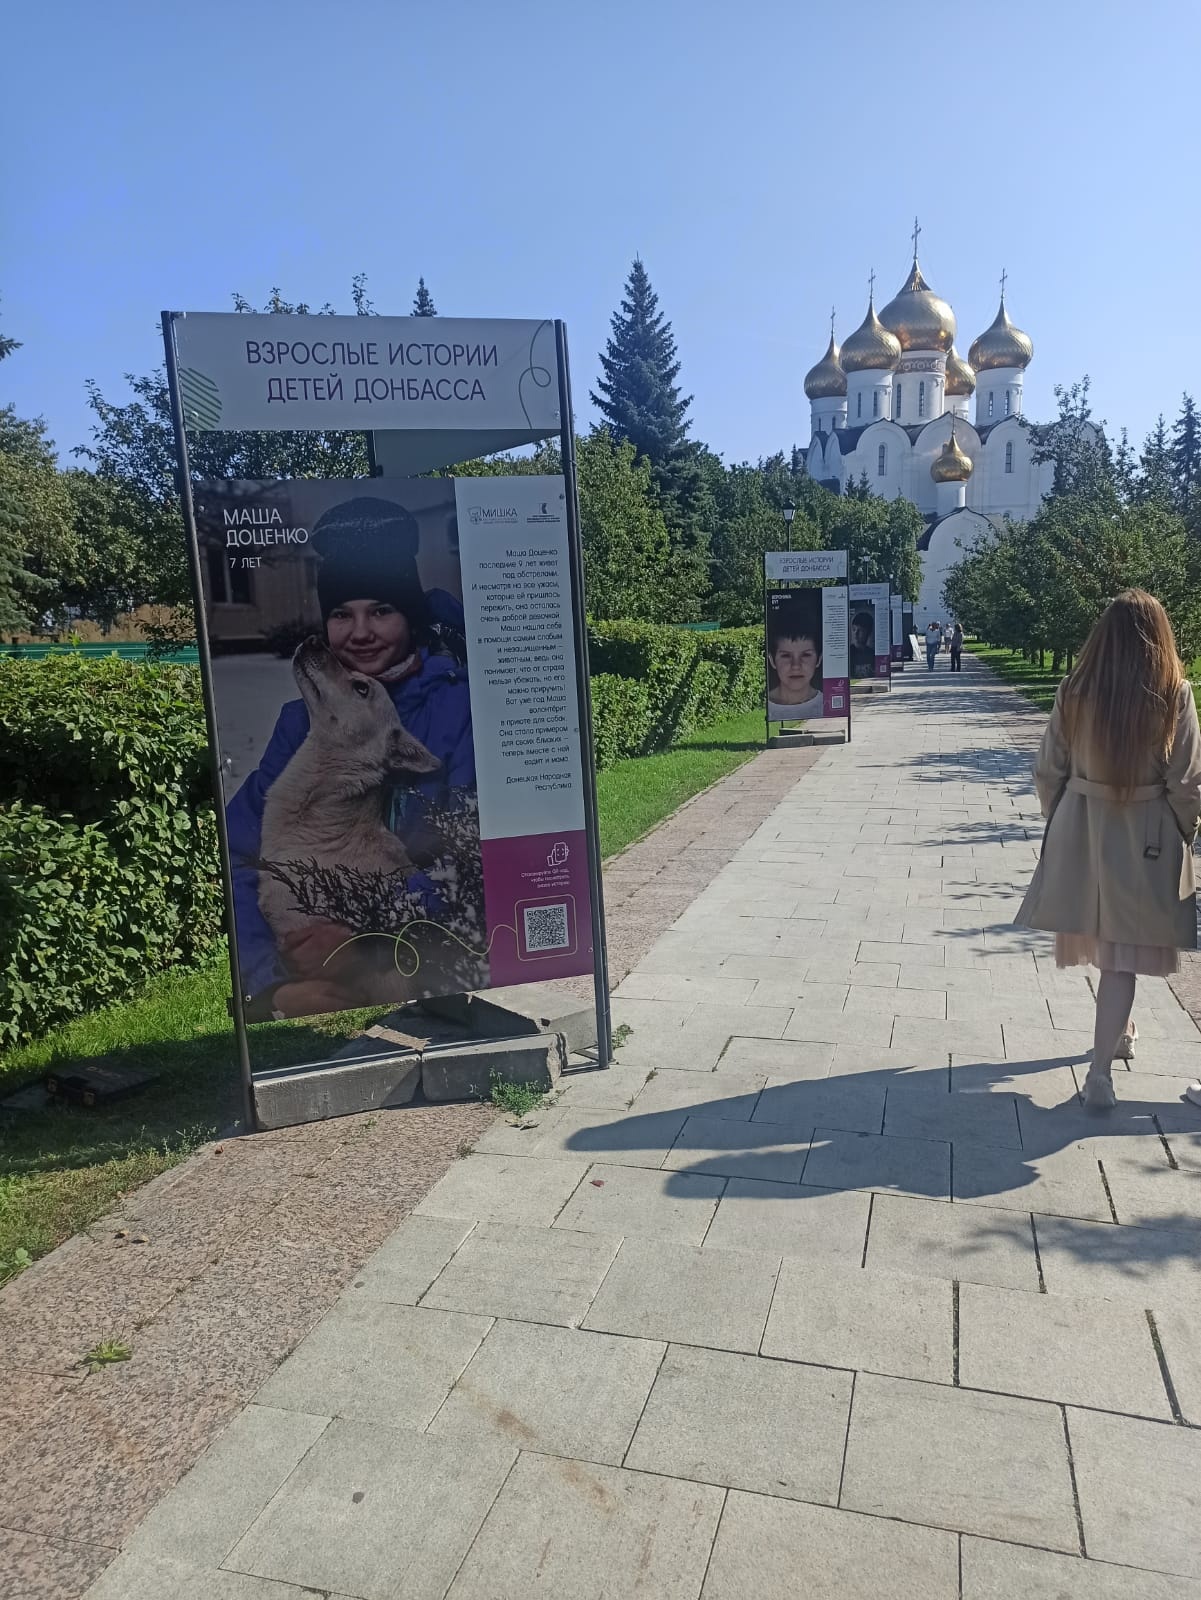 В Ярославле открылась выставка «Взрослые истории детей Донбасса»